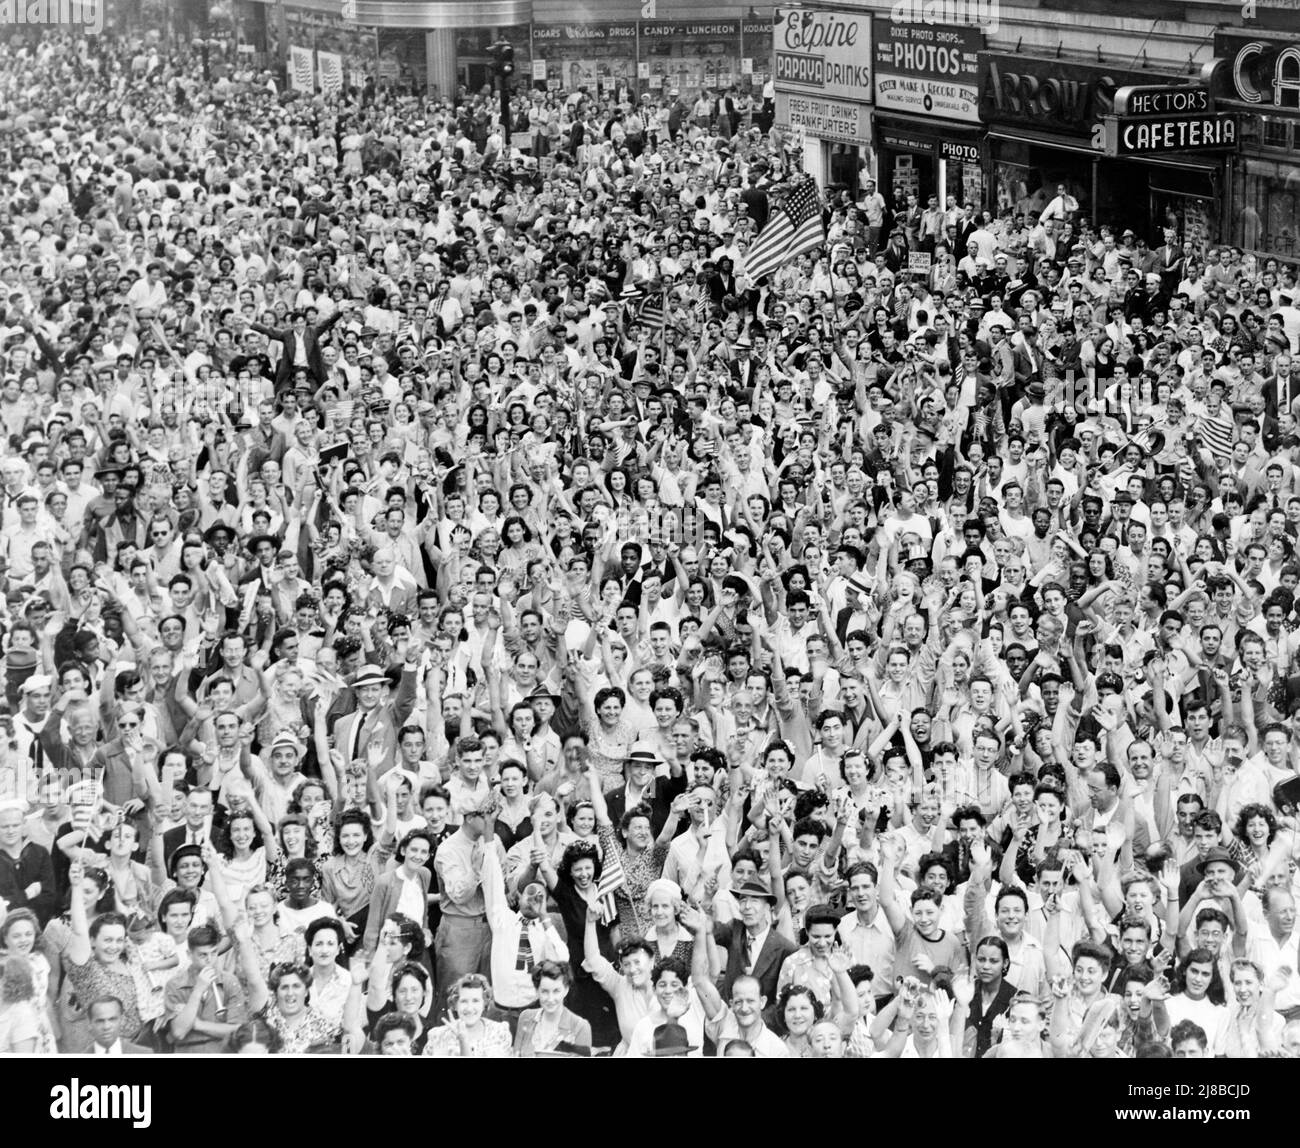 La folla festeggia il VJ Day (la vittoria sul Giappone), che segnò la fine dei combattimenti nel WW2, per le strade di New York Foto Stock